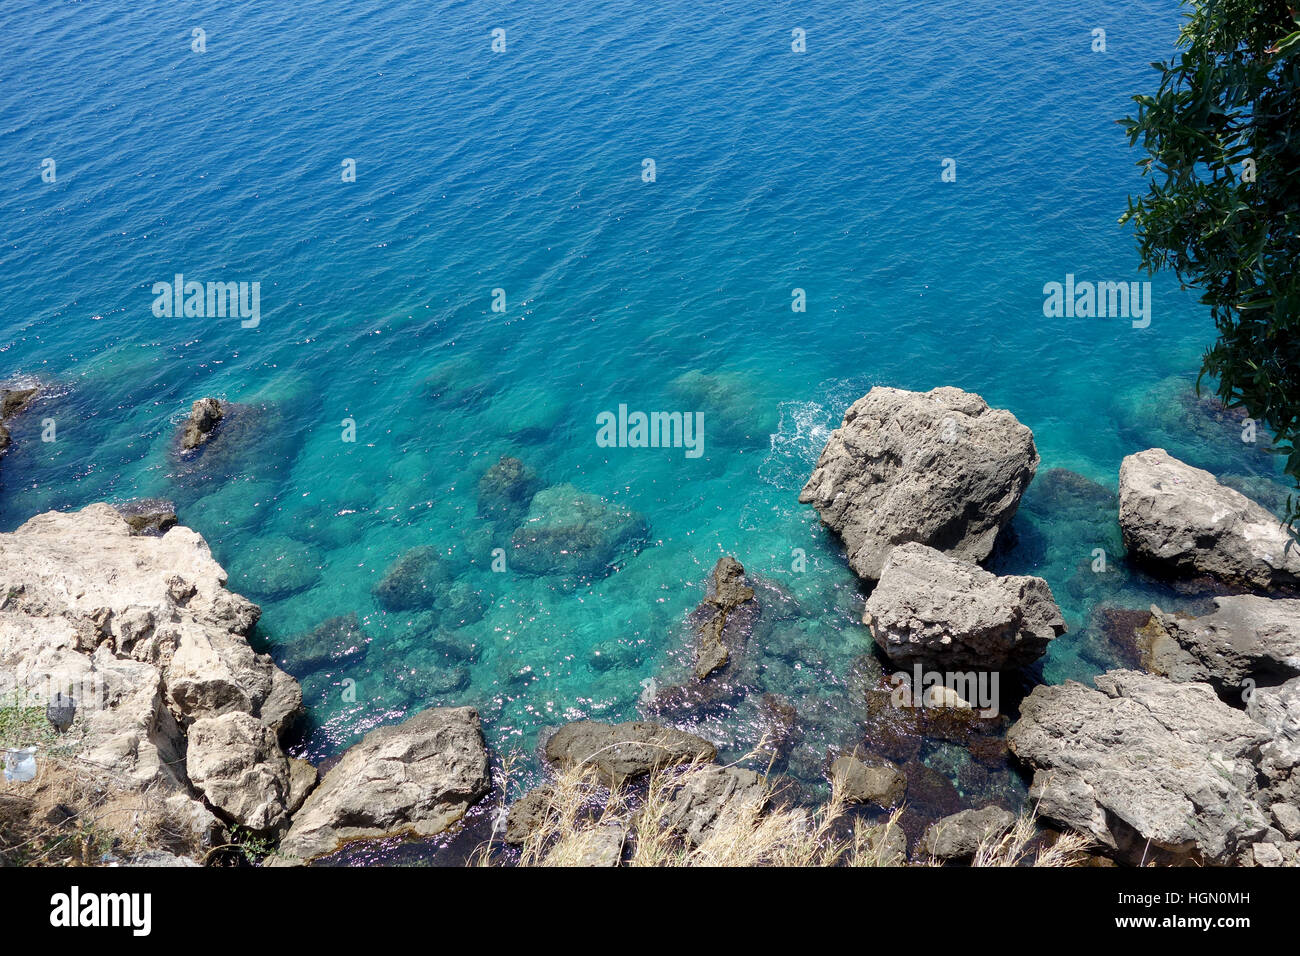 Le turquoise de la Méditerranée et de la côte rocheuse Banque D'Images